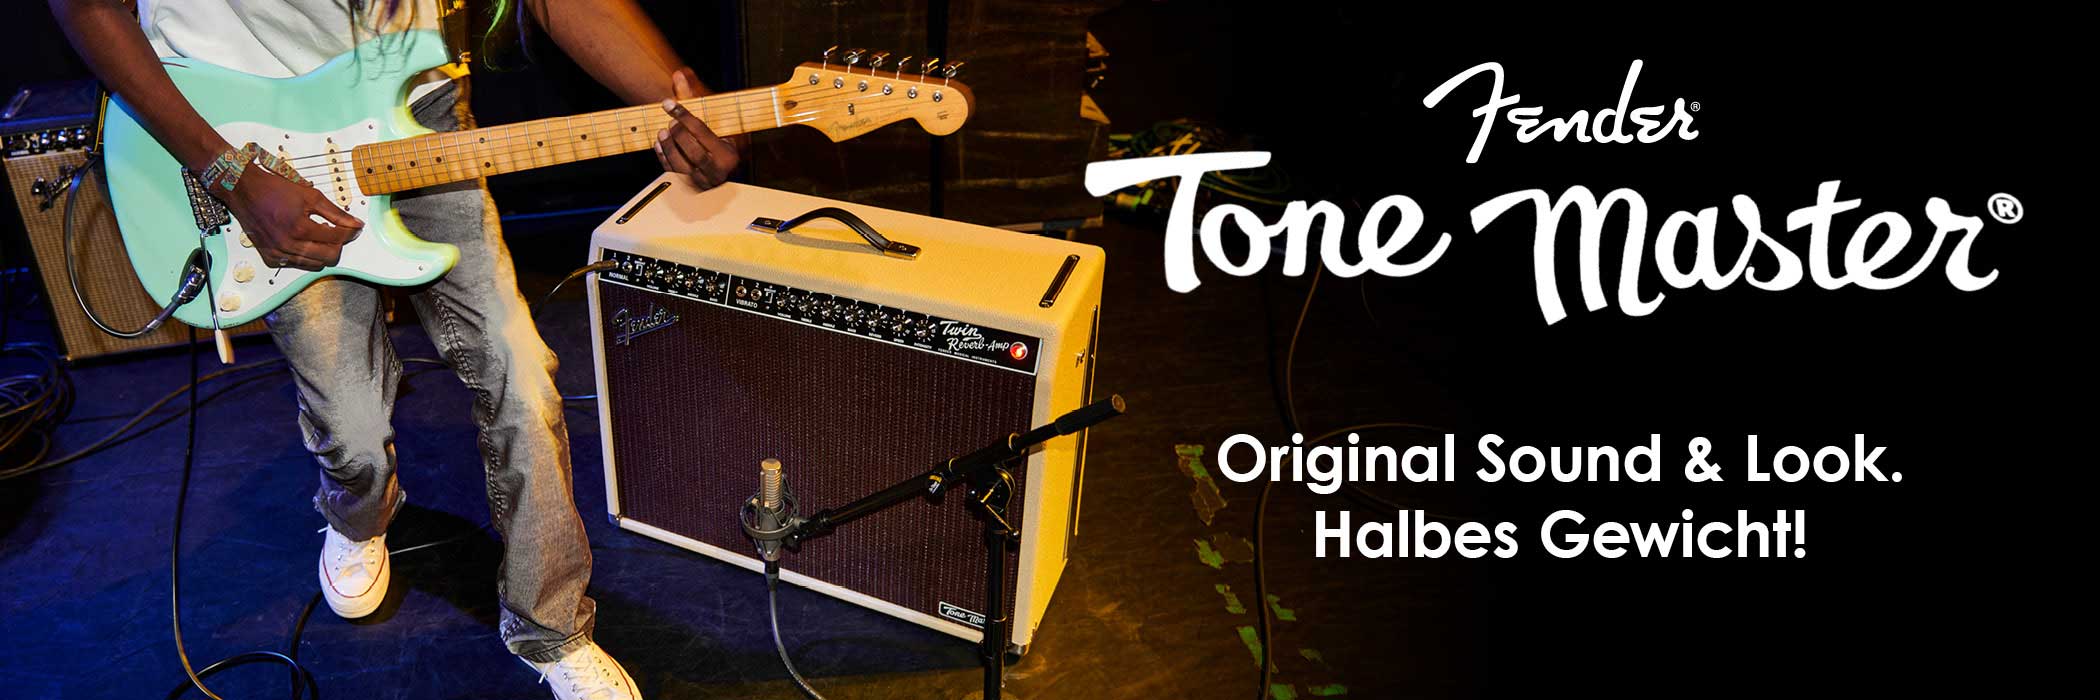 Banner für Fender Tone Master-Serie